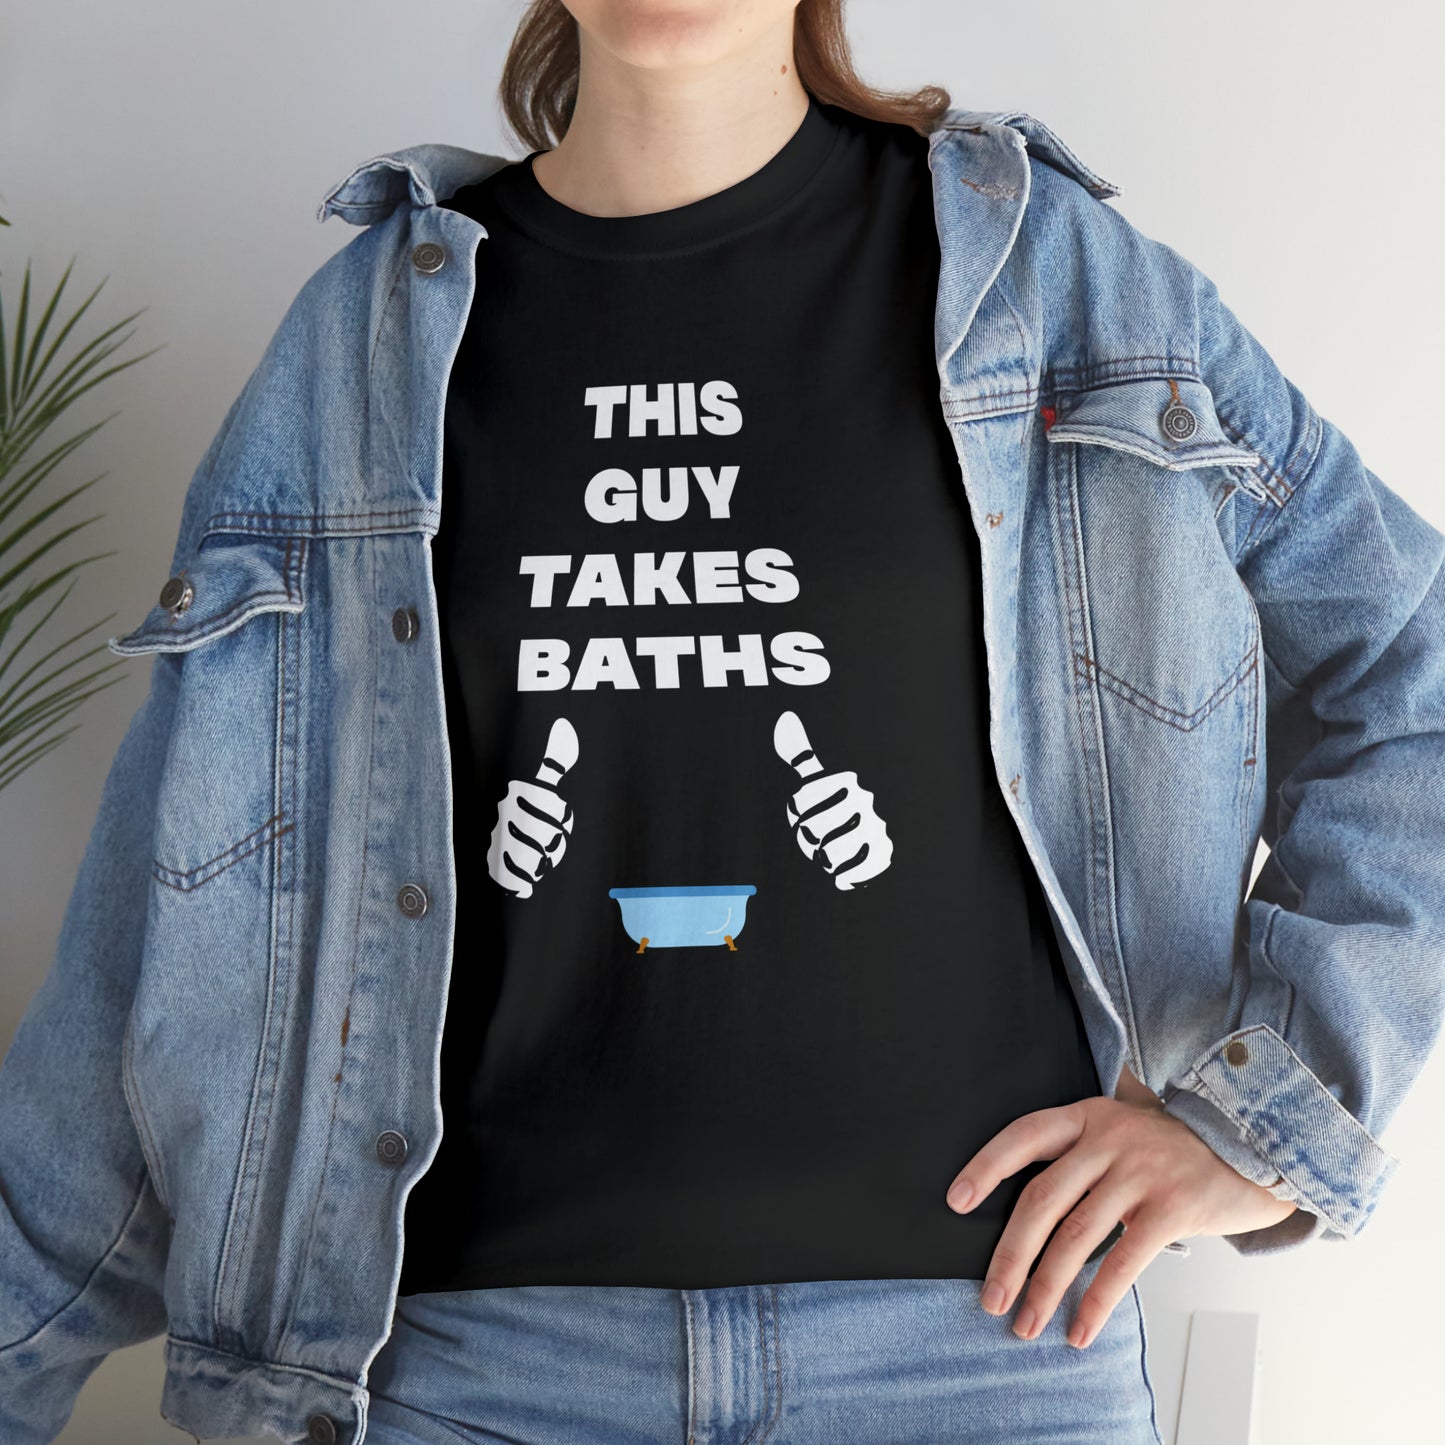 BATH TAKER T-SHIRT